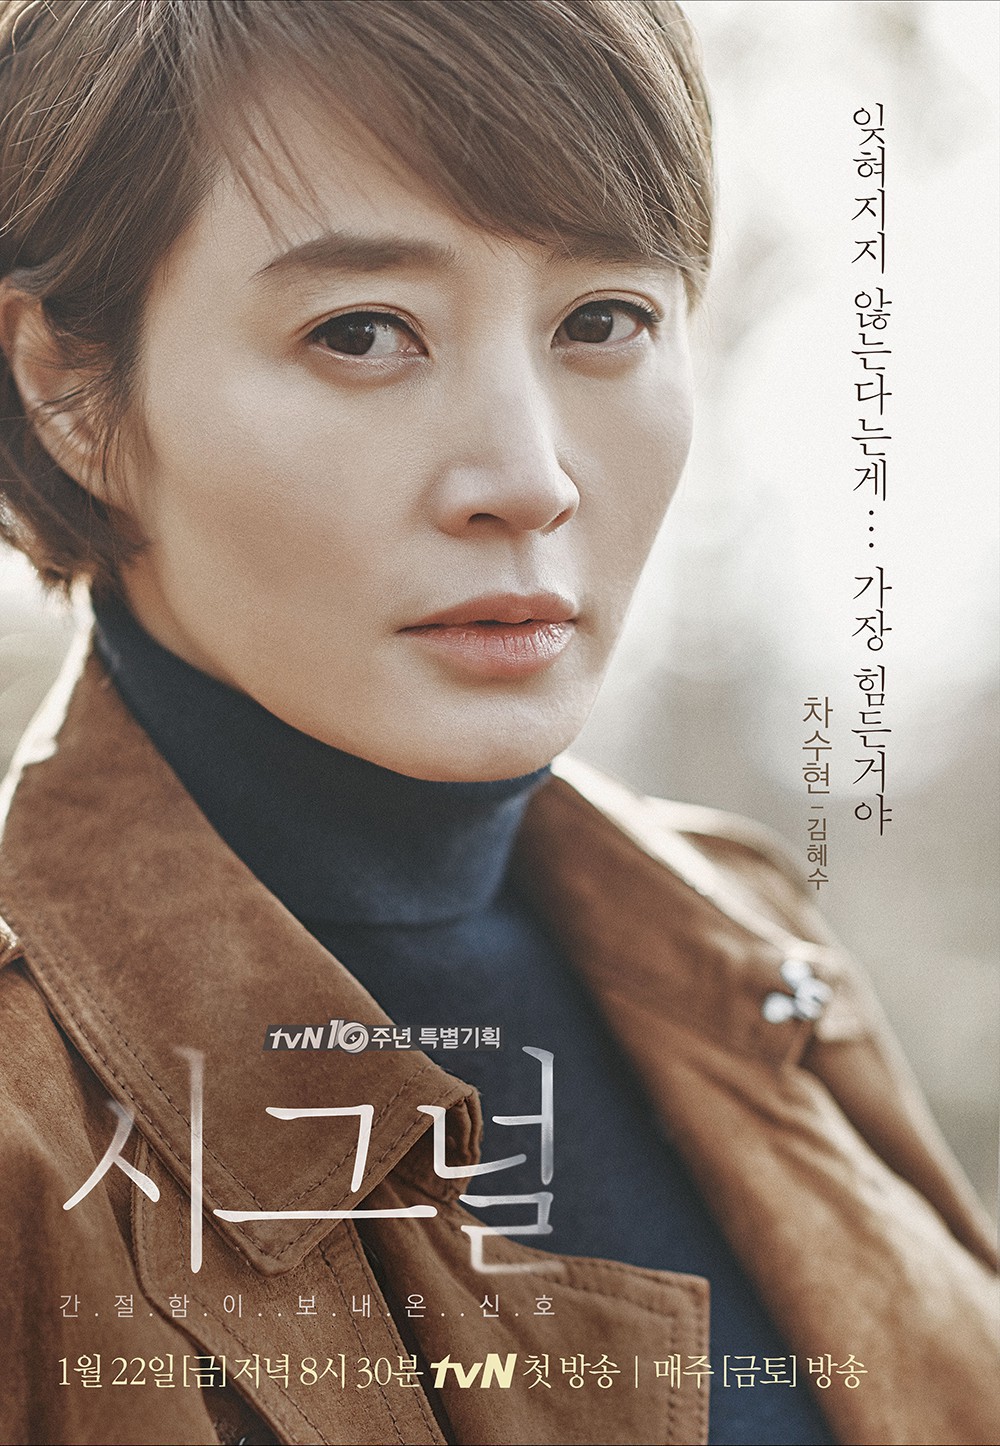 6 nữ chính huyền thoại sở hữu cá tính vạn người mê trong phim truyền hình Hàn Quốc - Ảnh 14.